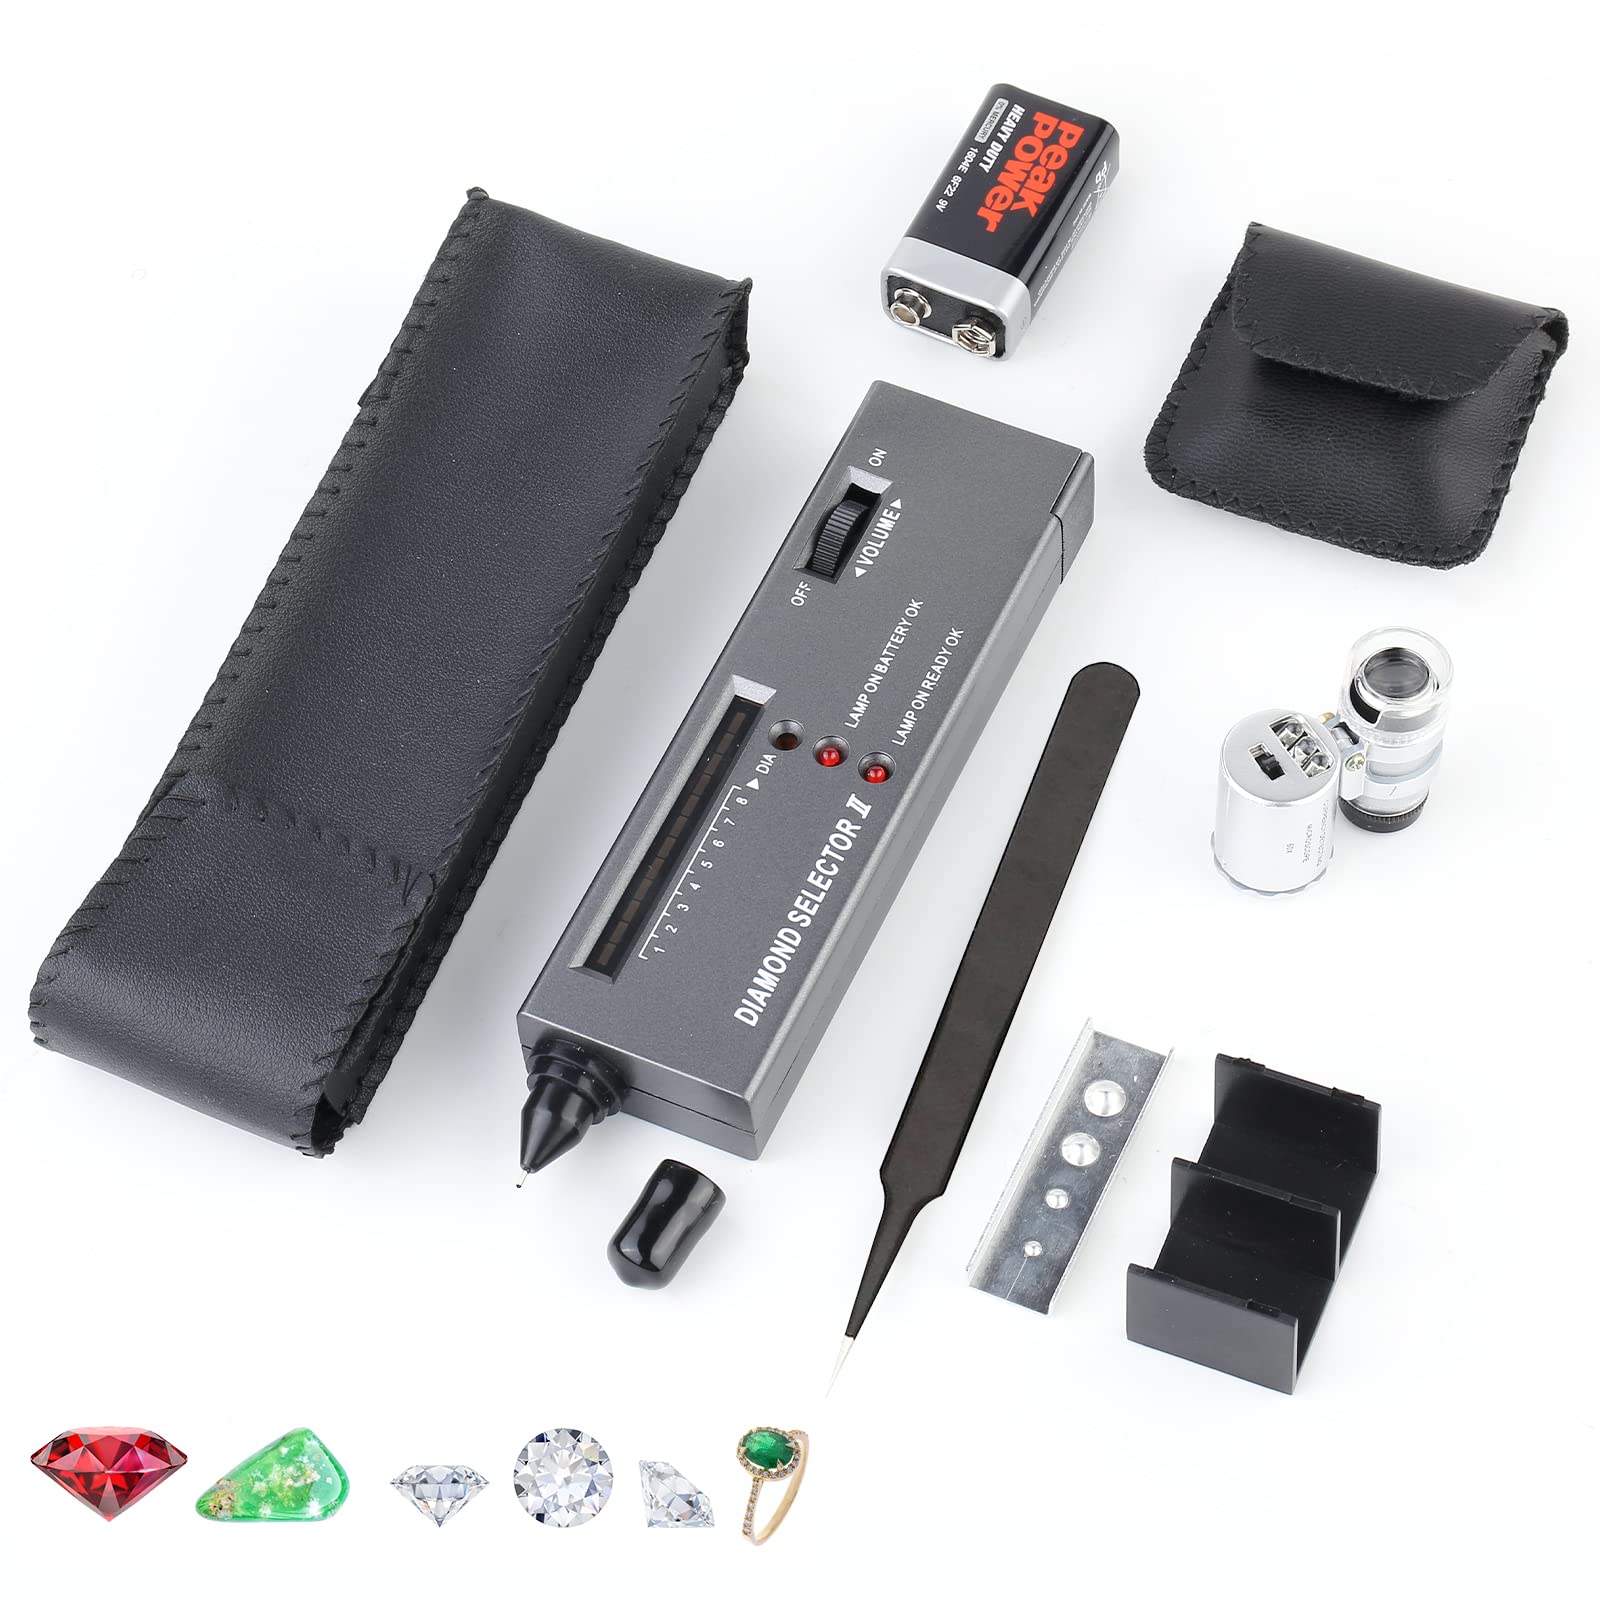 GetUSCart- Horizon Jeweler Tool Kit - Portable Diamond Tester Pen